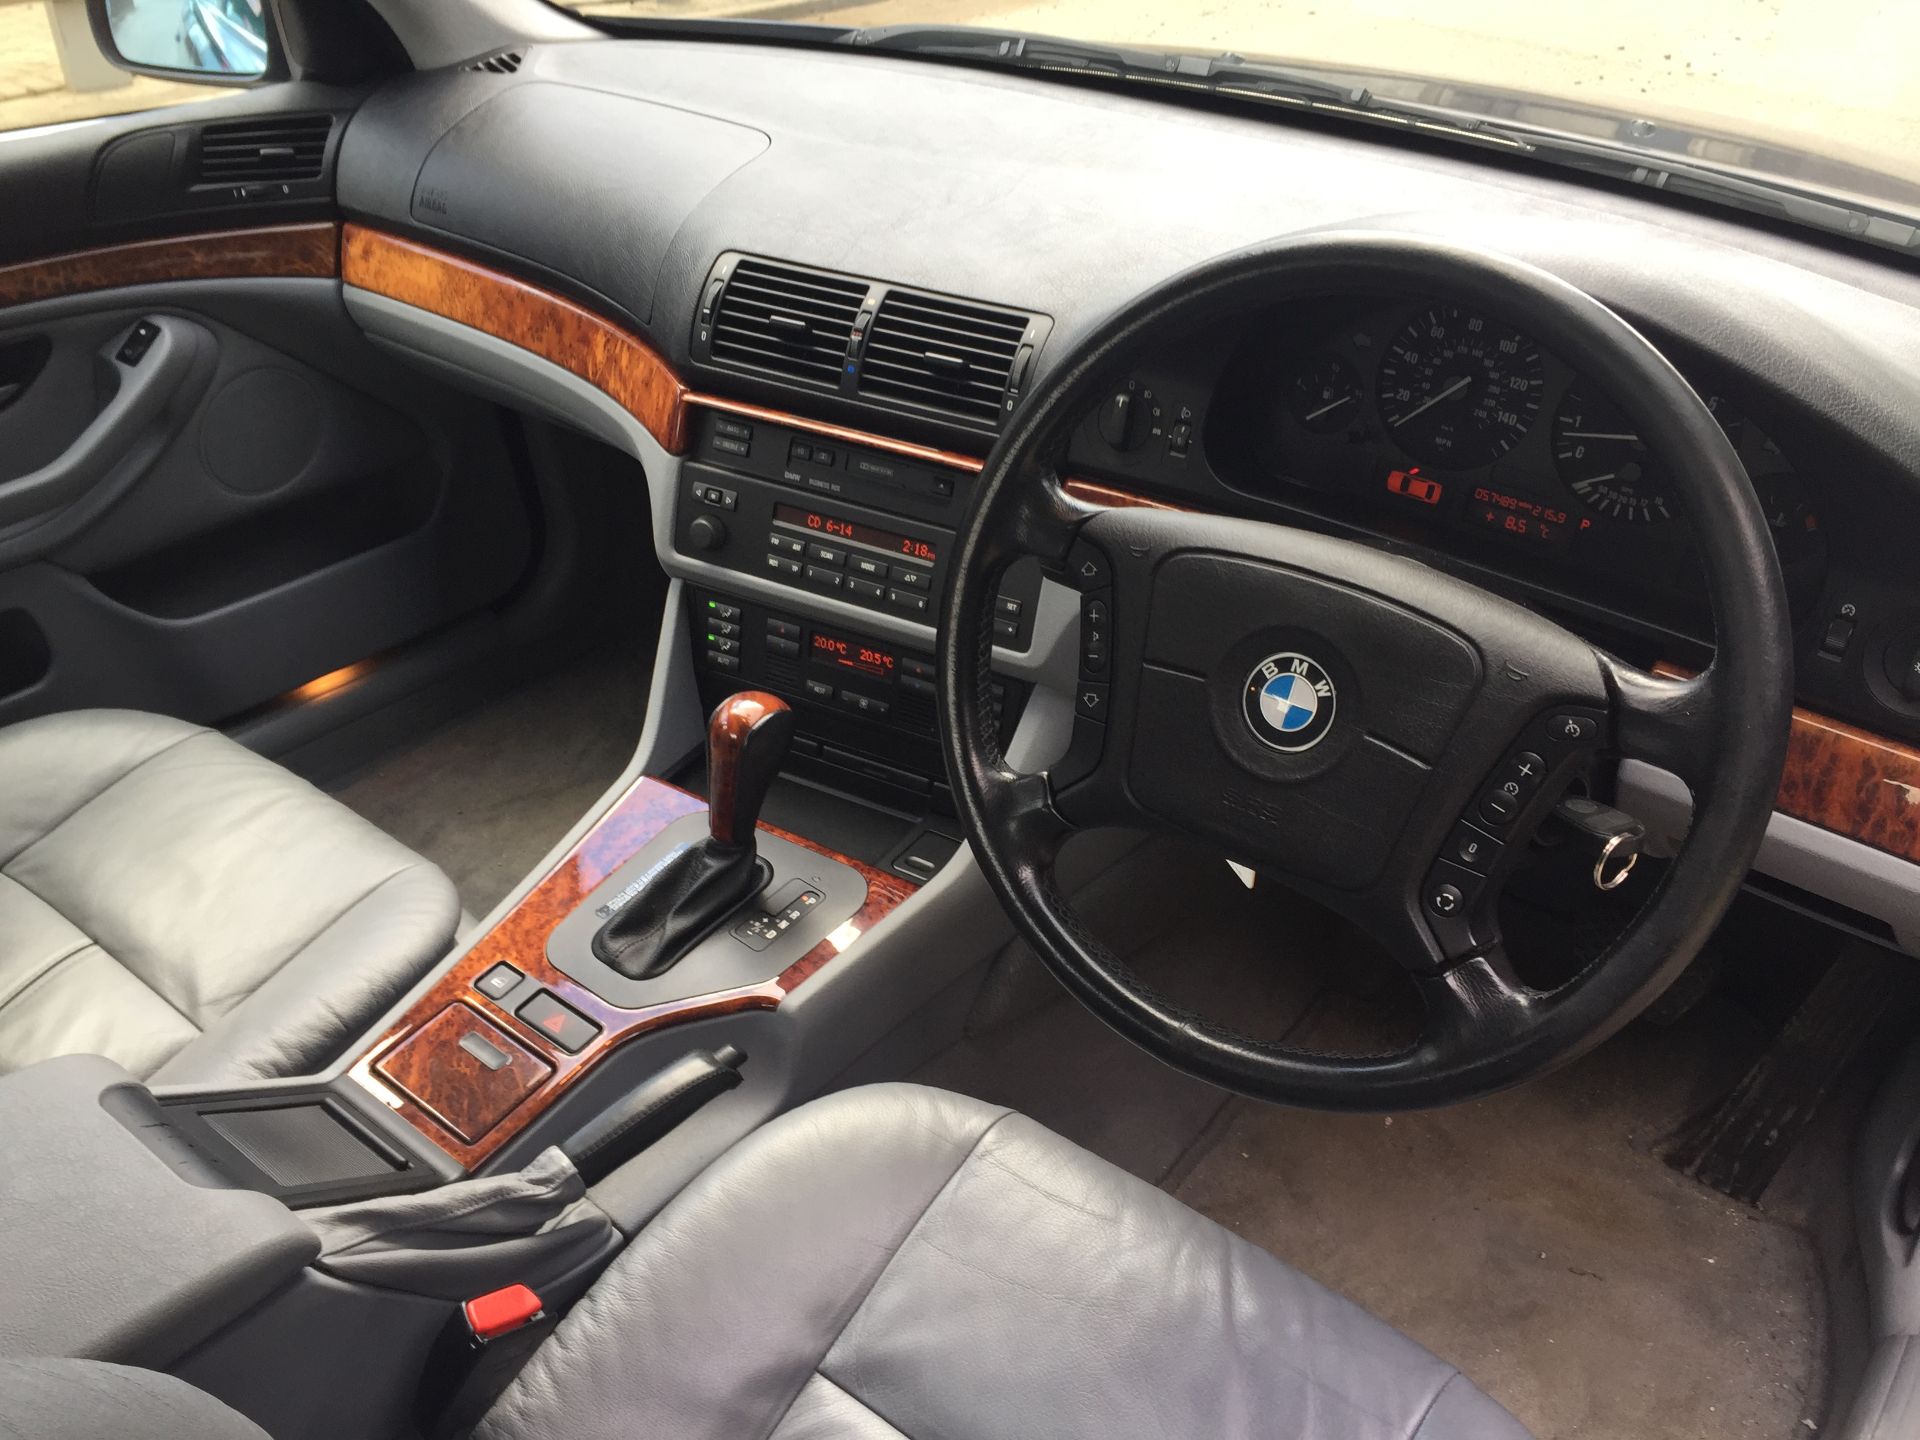 1997 BMW 528i SE - Image 7 of 11